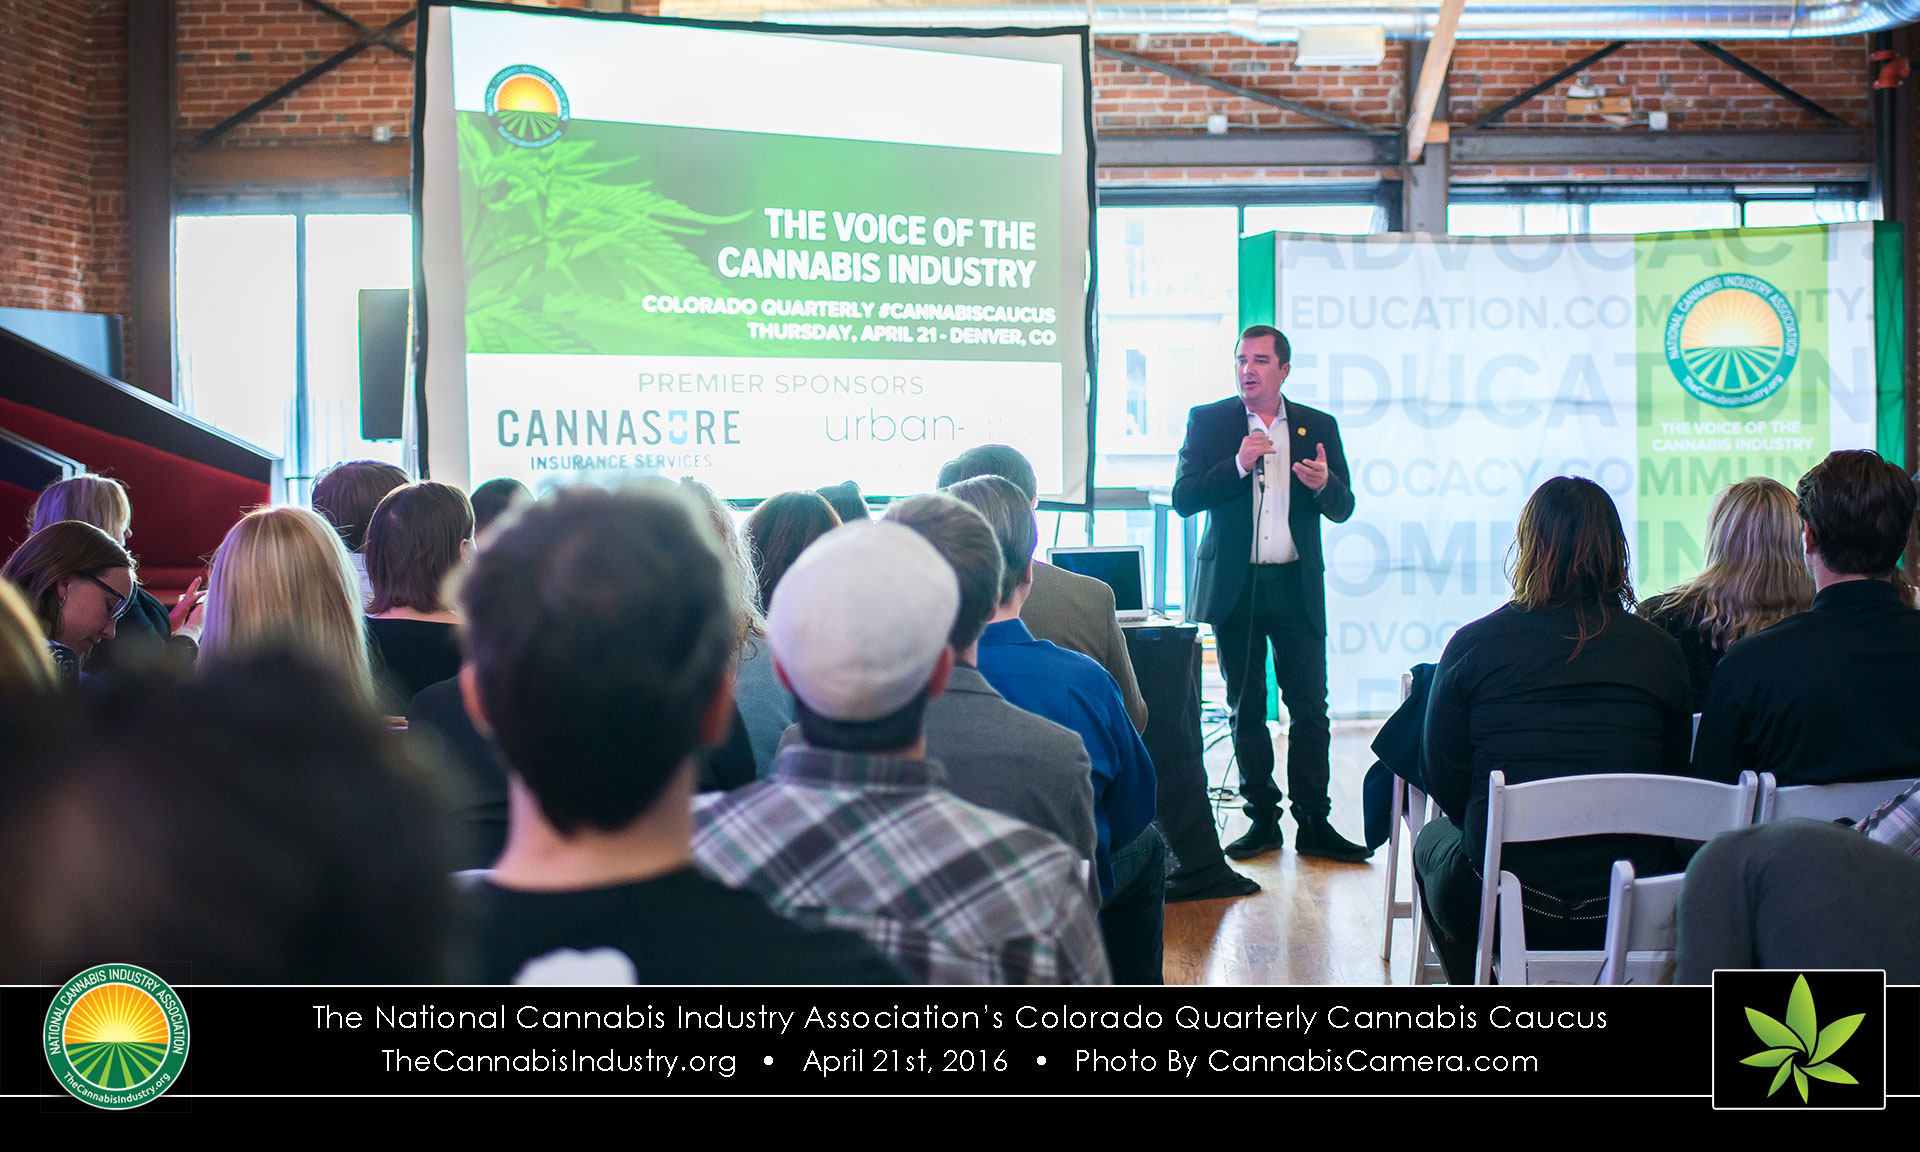 NCIA's Colorado Quarterly Cannabis Caucus with Dana Rohrabacher